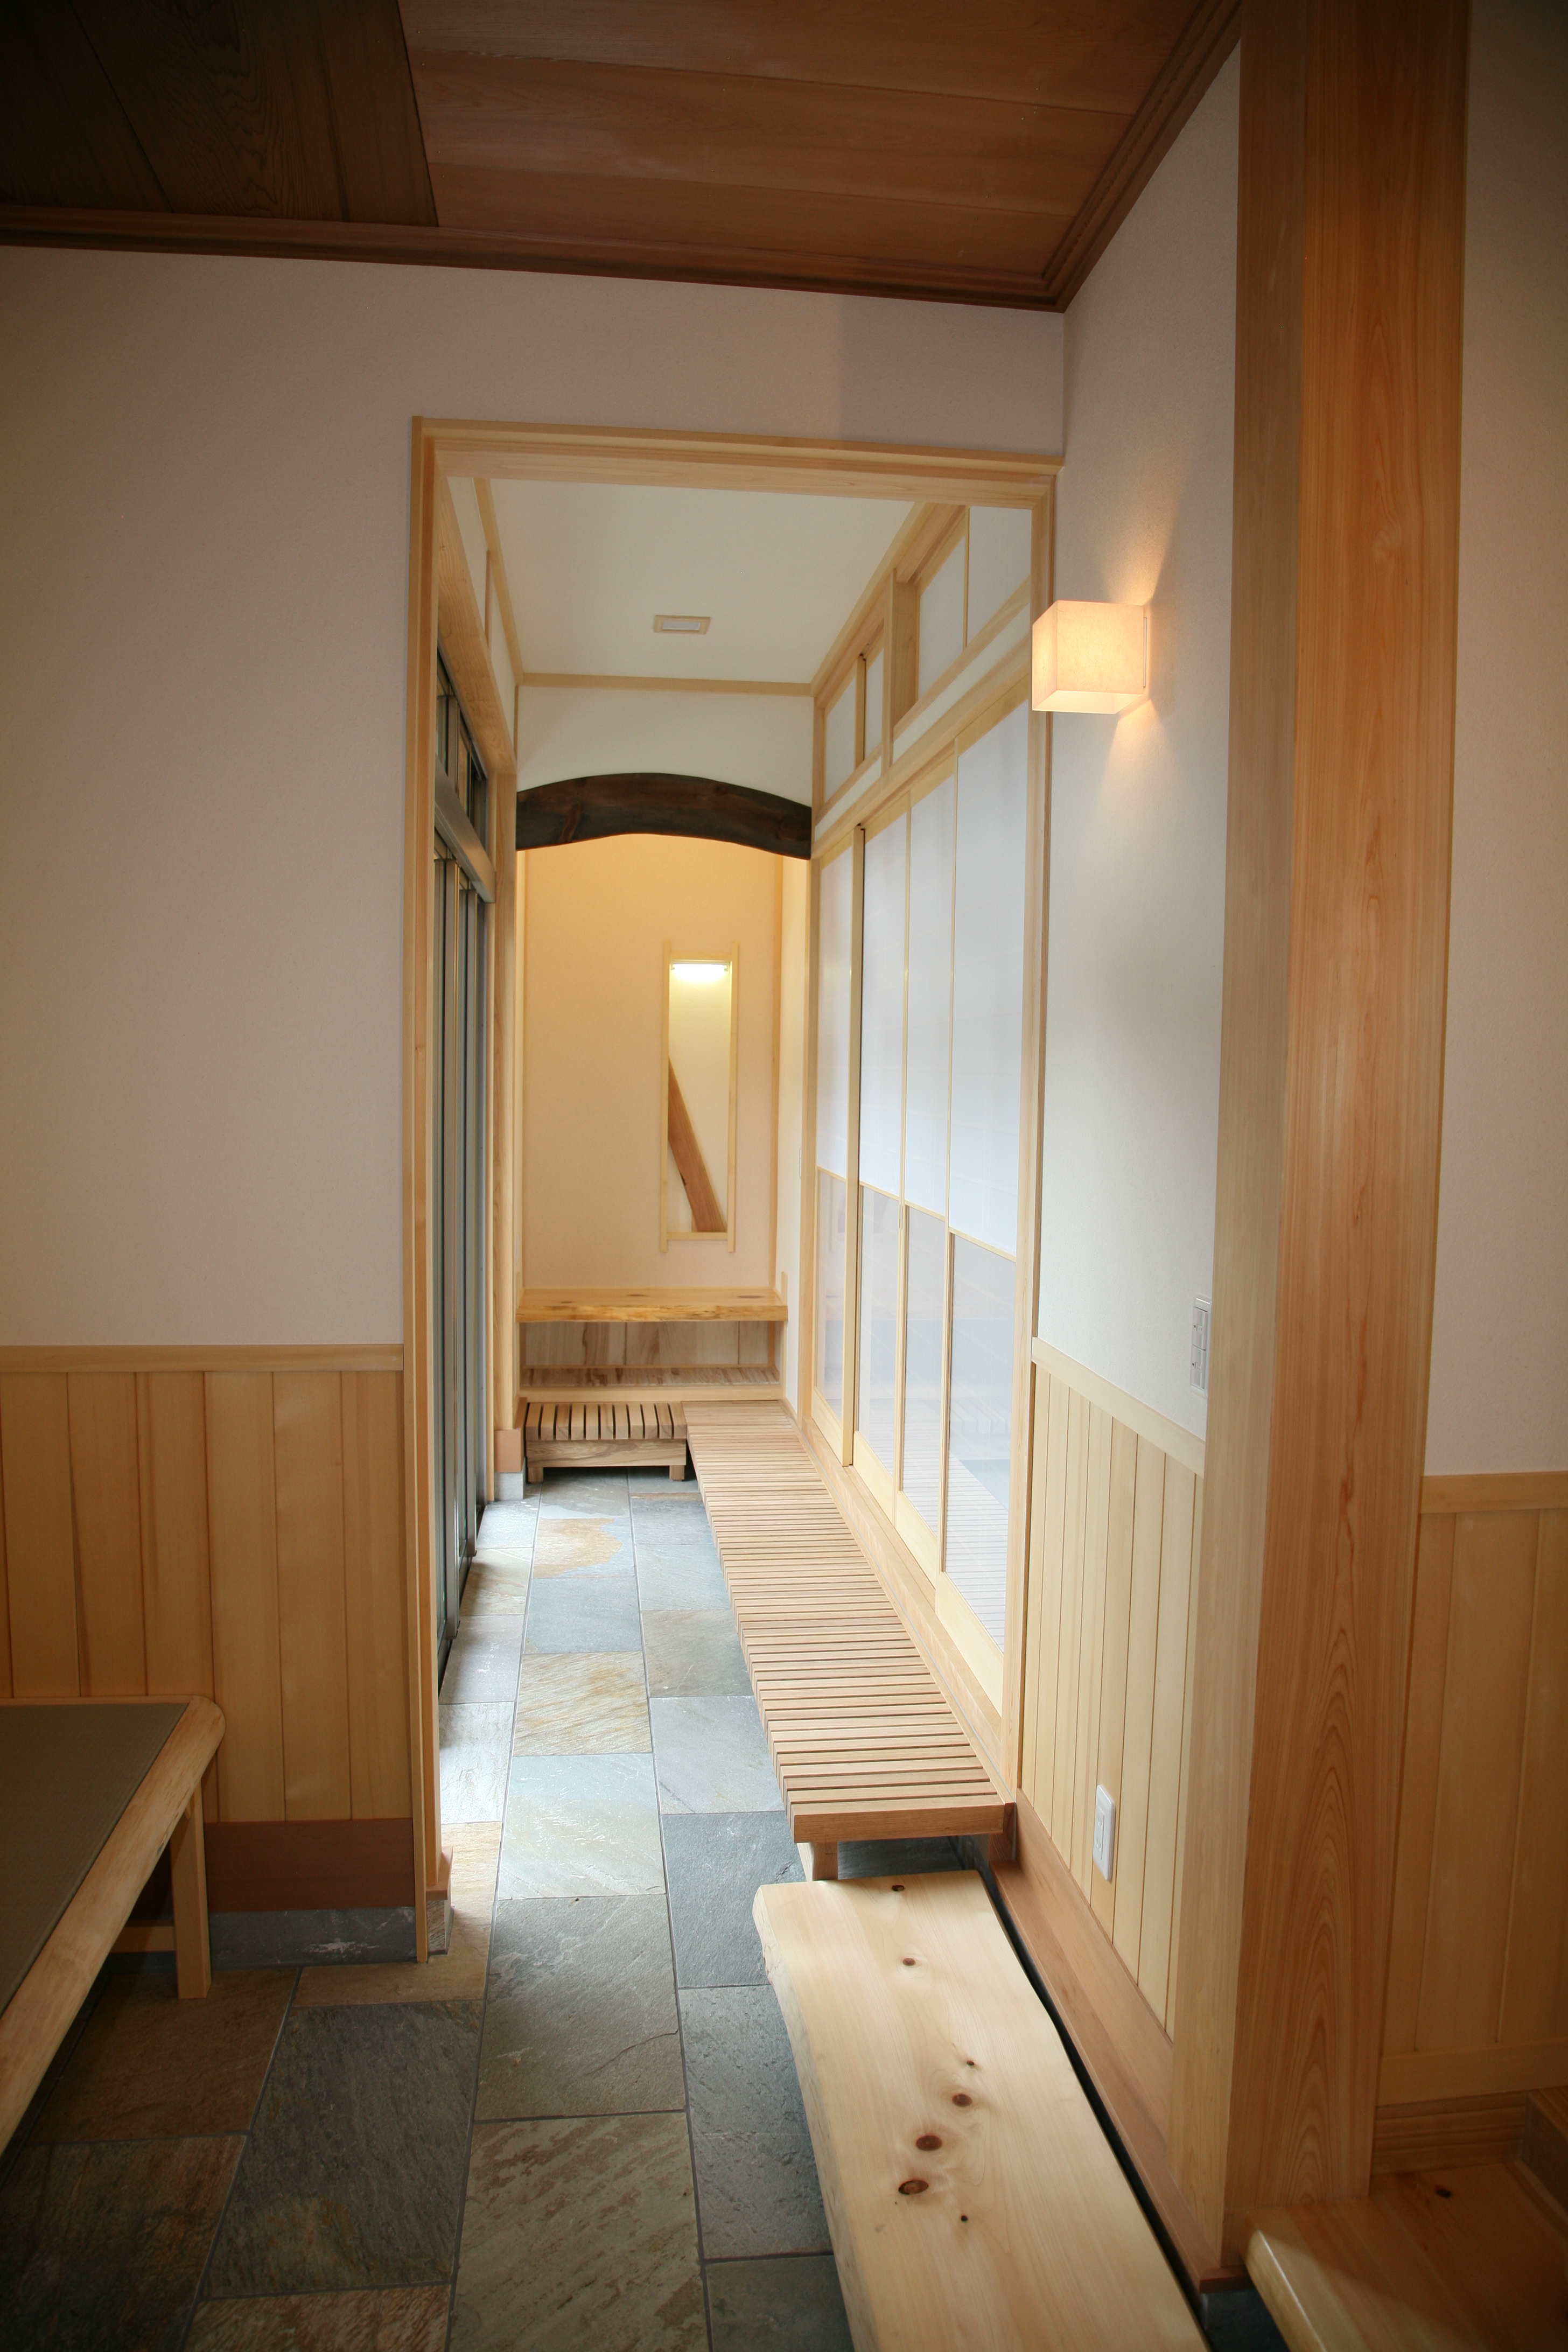 鯖江市 玄関土間は陽だまり茶房 の家 木の香の家 伍代工務店